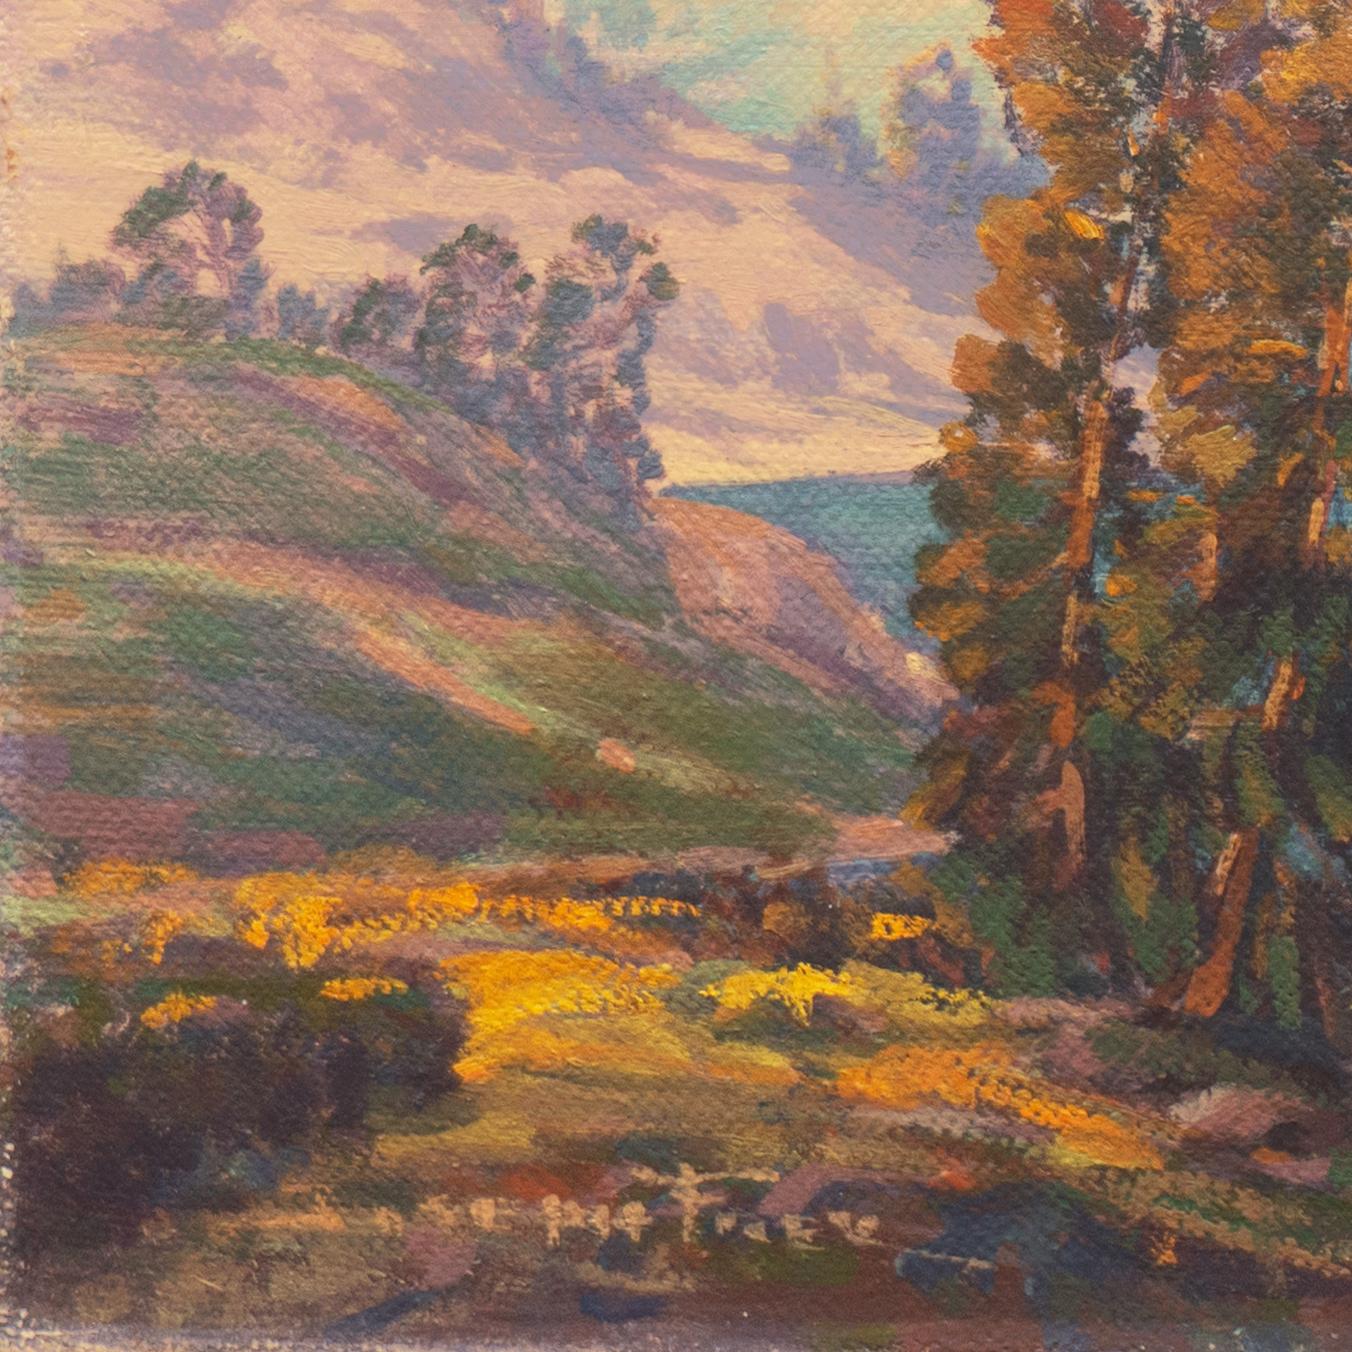 'High Sierras, California', Plein Air Impressionist Lake Oil, AIC, San Francisco - Painting by Joseph Paul Frey